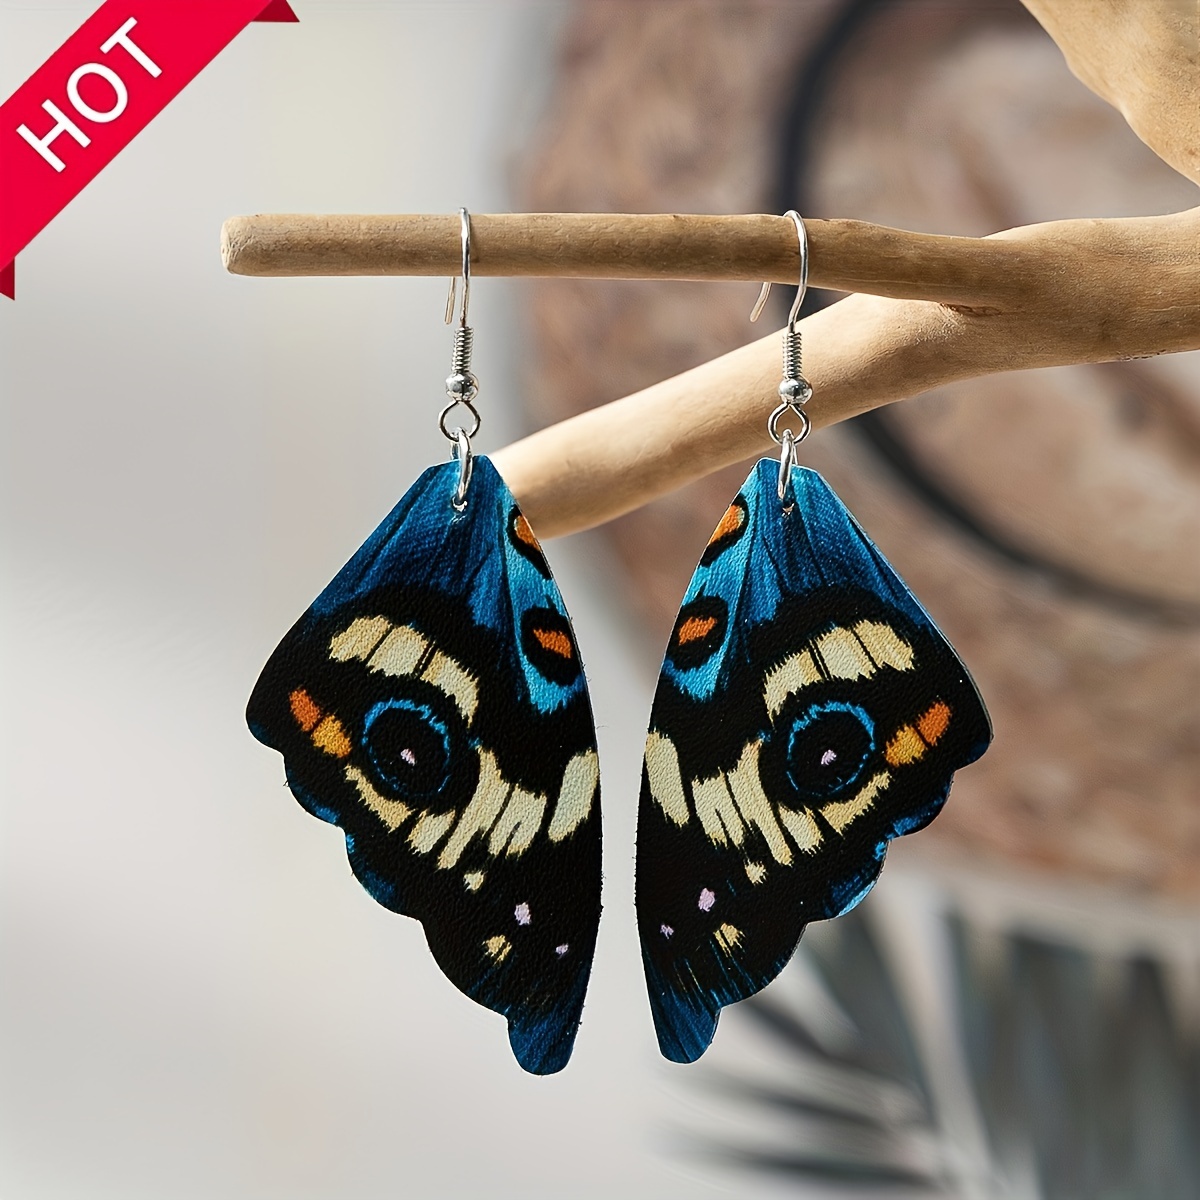 

Vintage Butterfly Wings Drop Dangle Earrings Bohemian Colorful Ear Jewelry For Women Jewelry Gifts